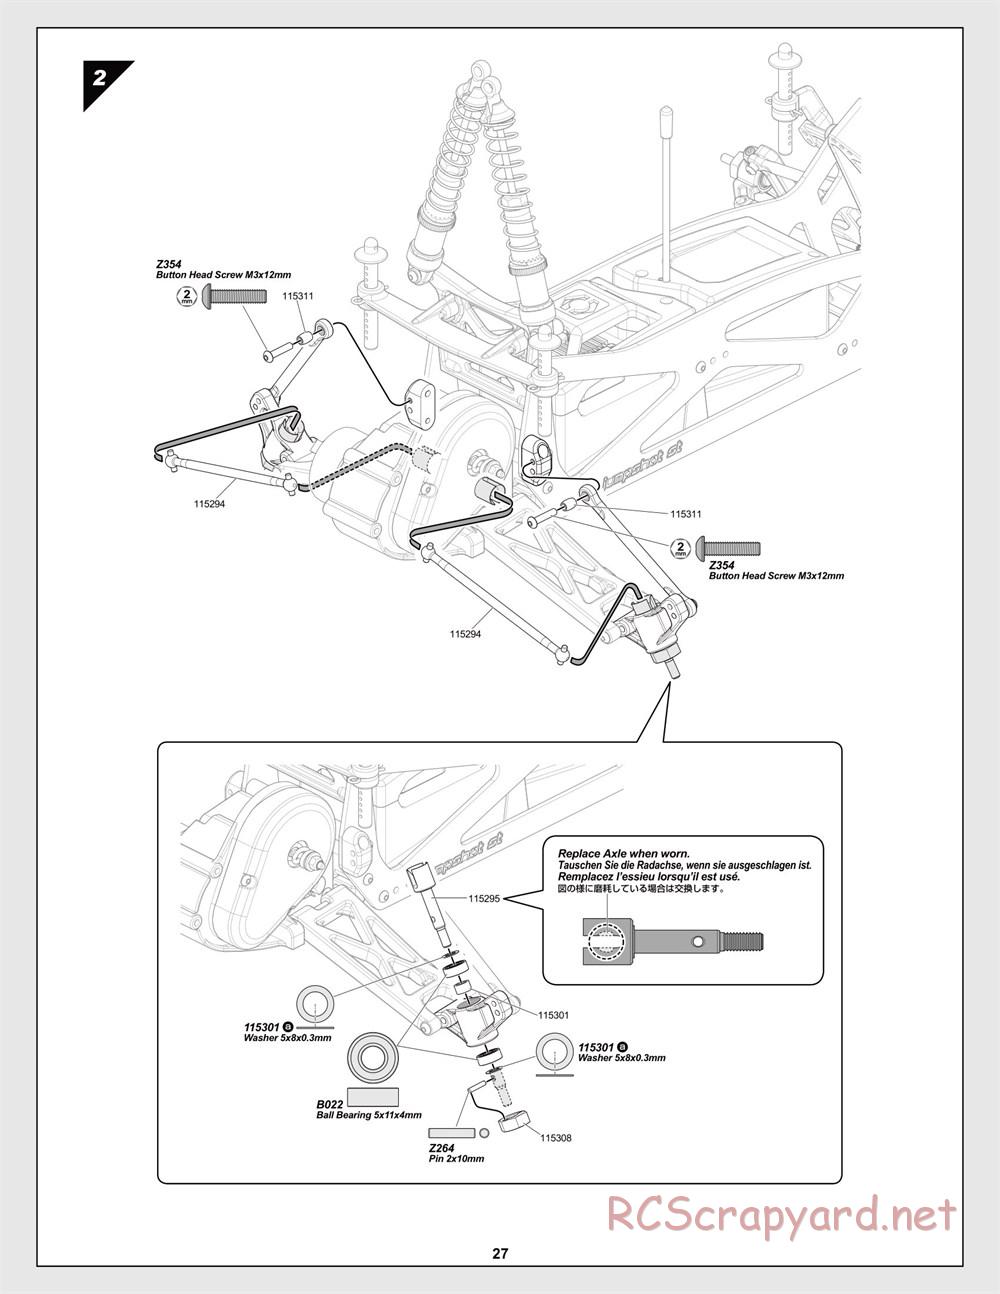 HPI - Jumpshot MT V2 - Manual - Page 27